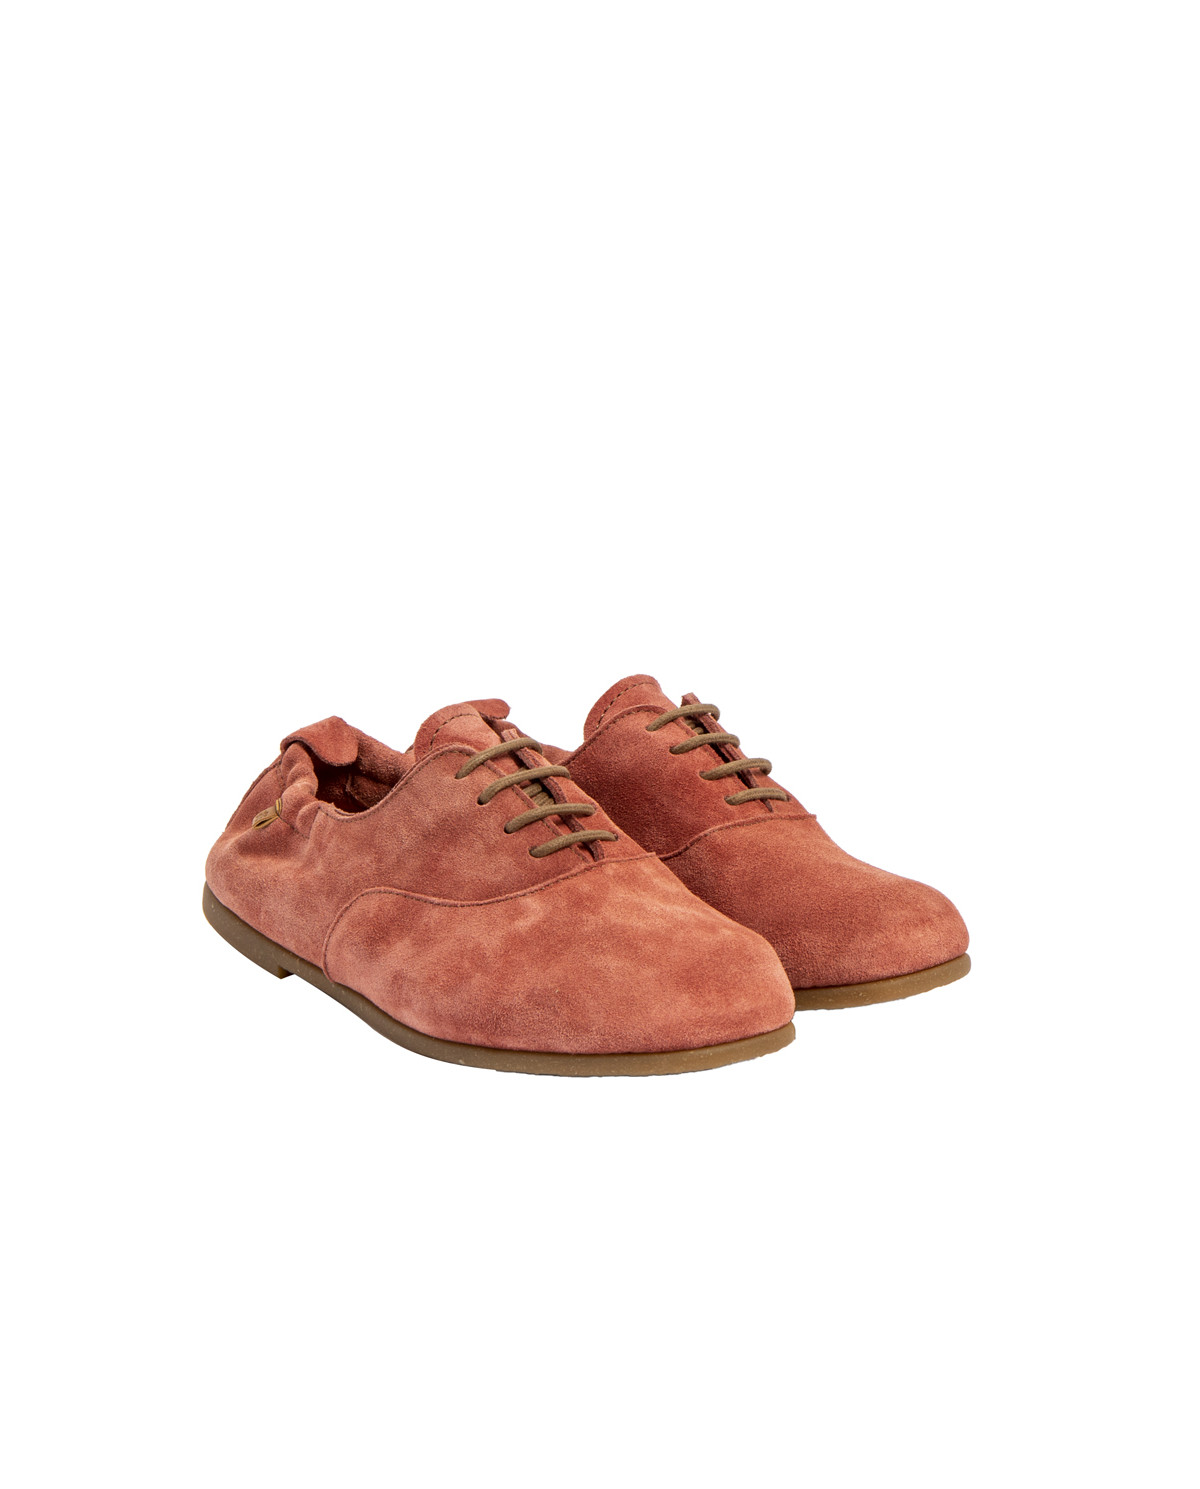 Chaussures confortables à lacets - Rose - El naturalista